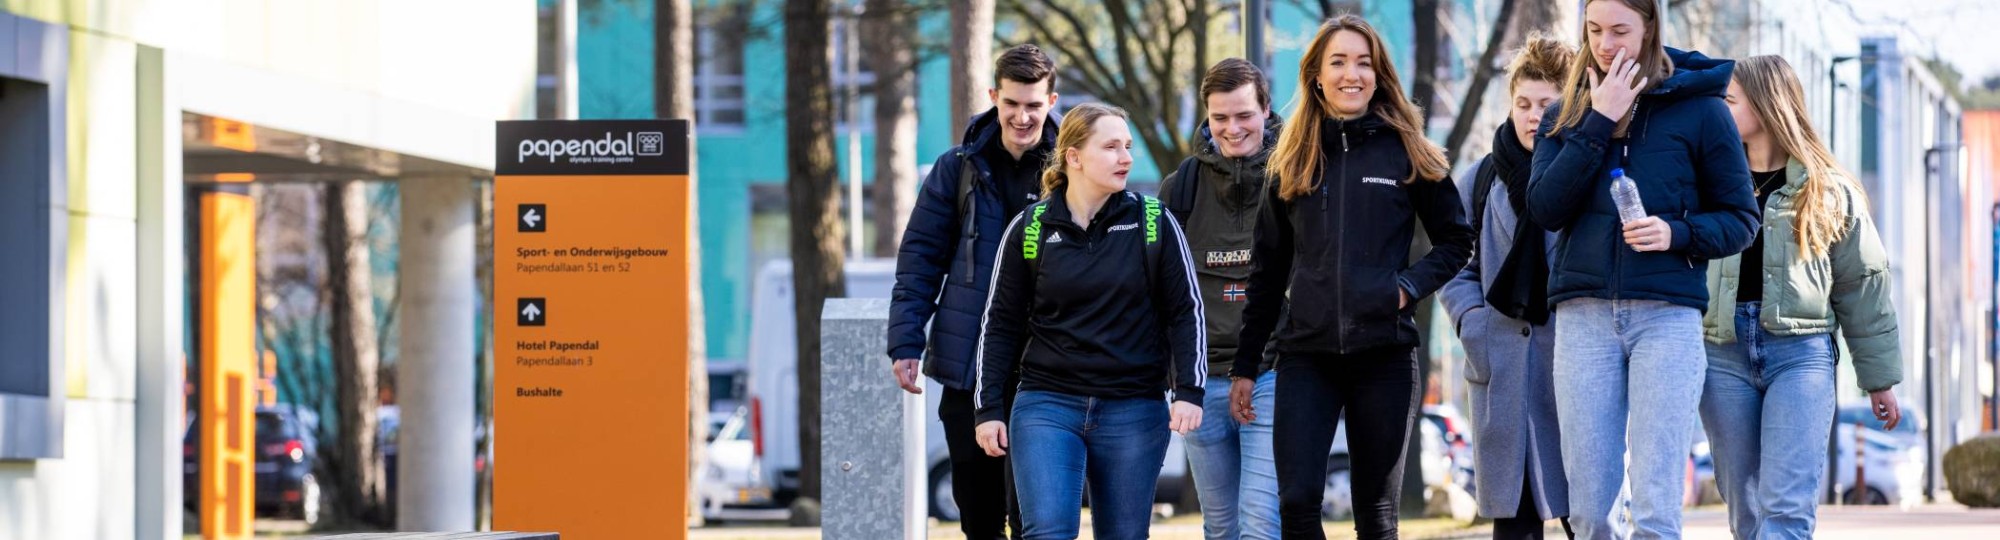 Sportkunde studenten lopen buiten2 2022 Papendal